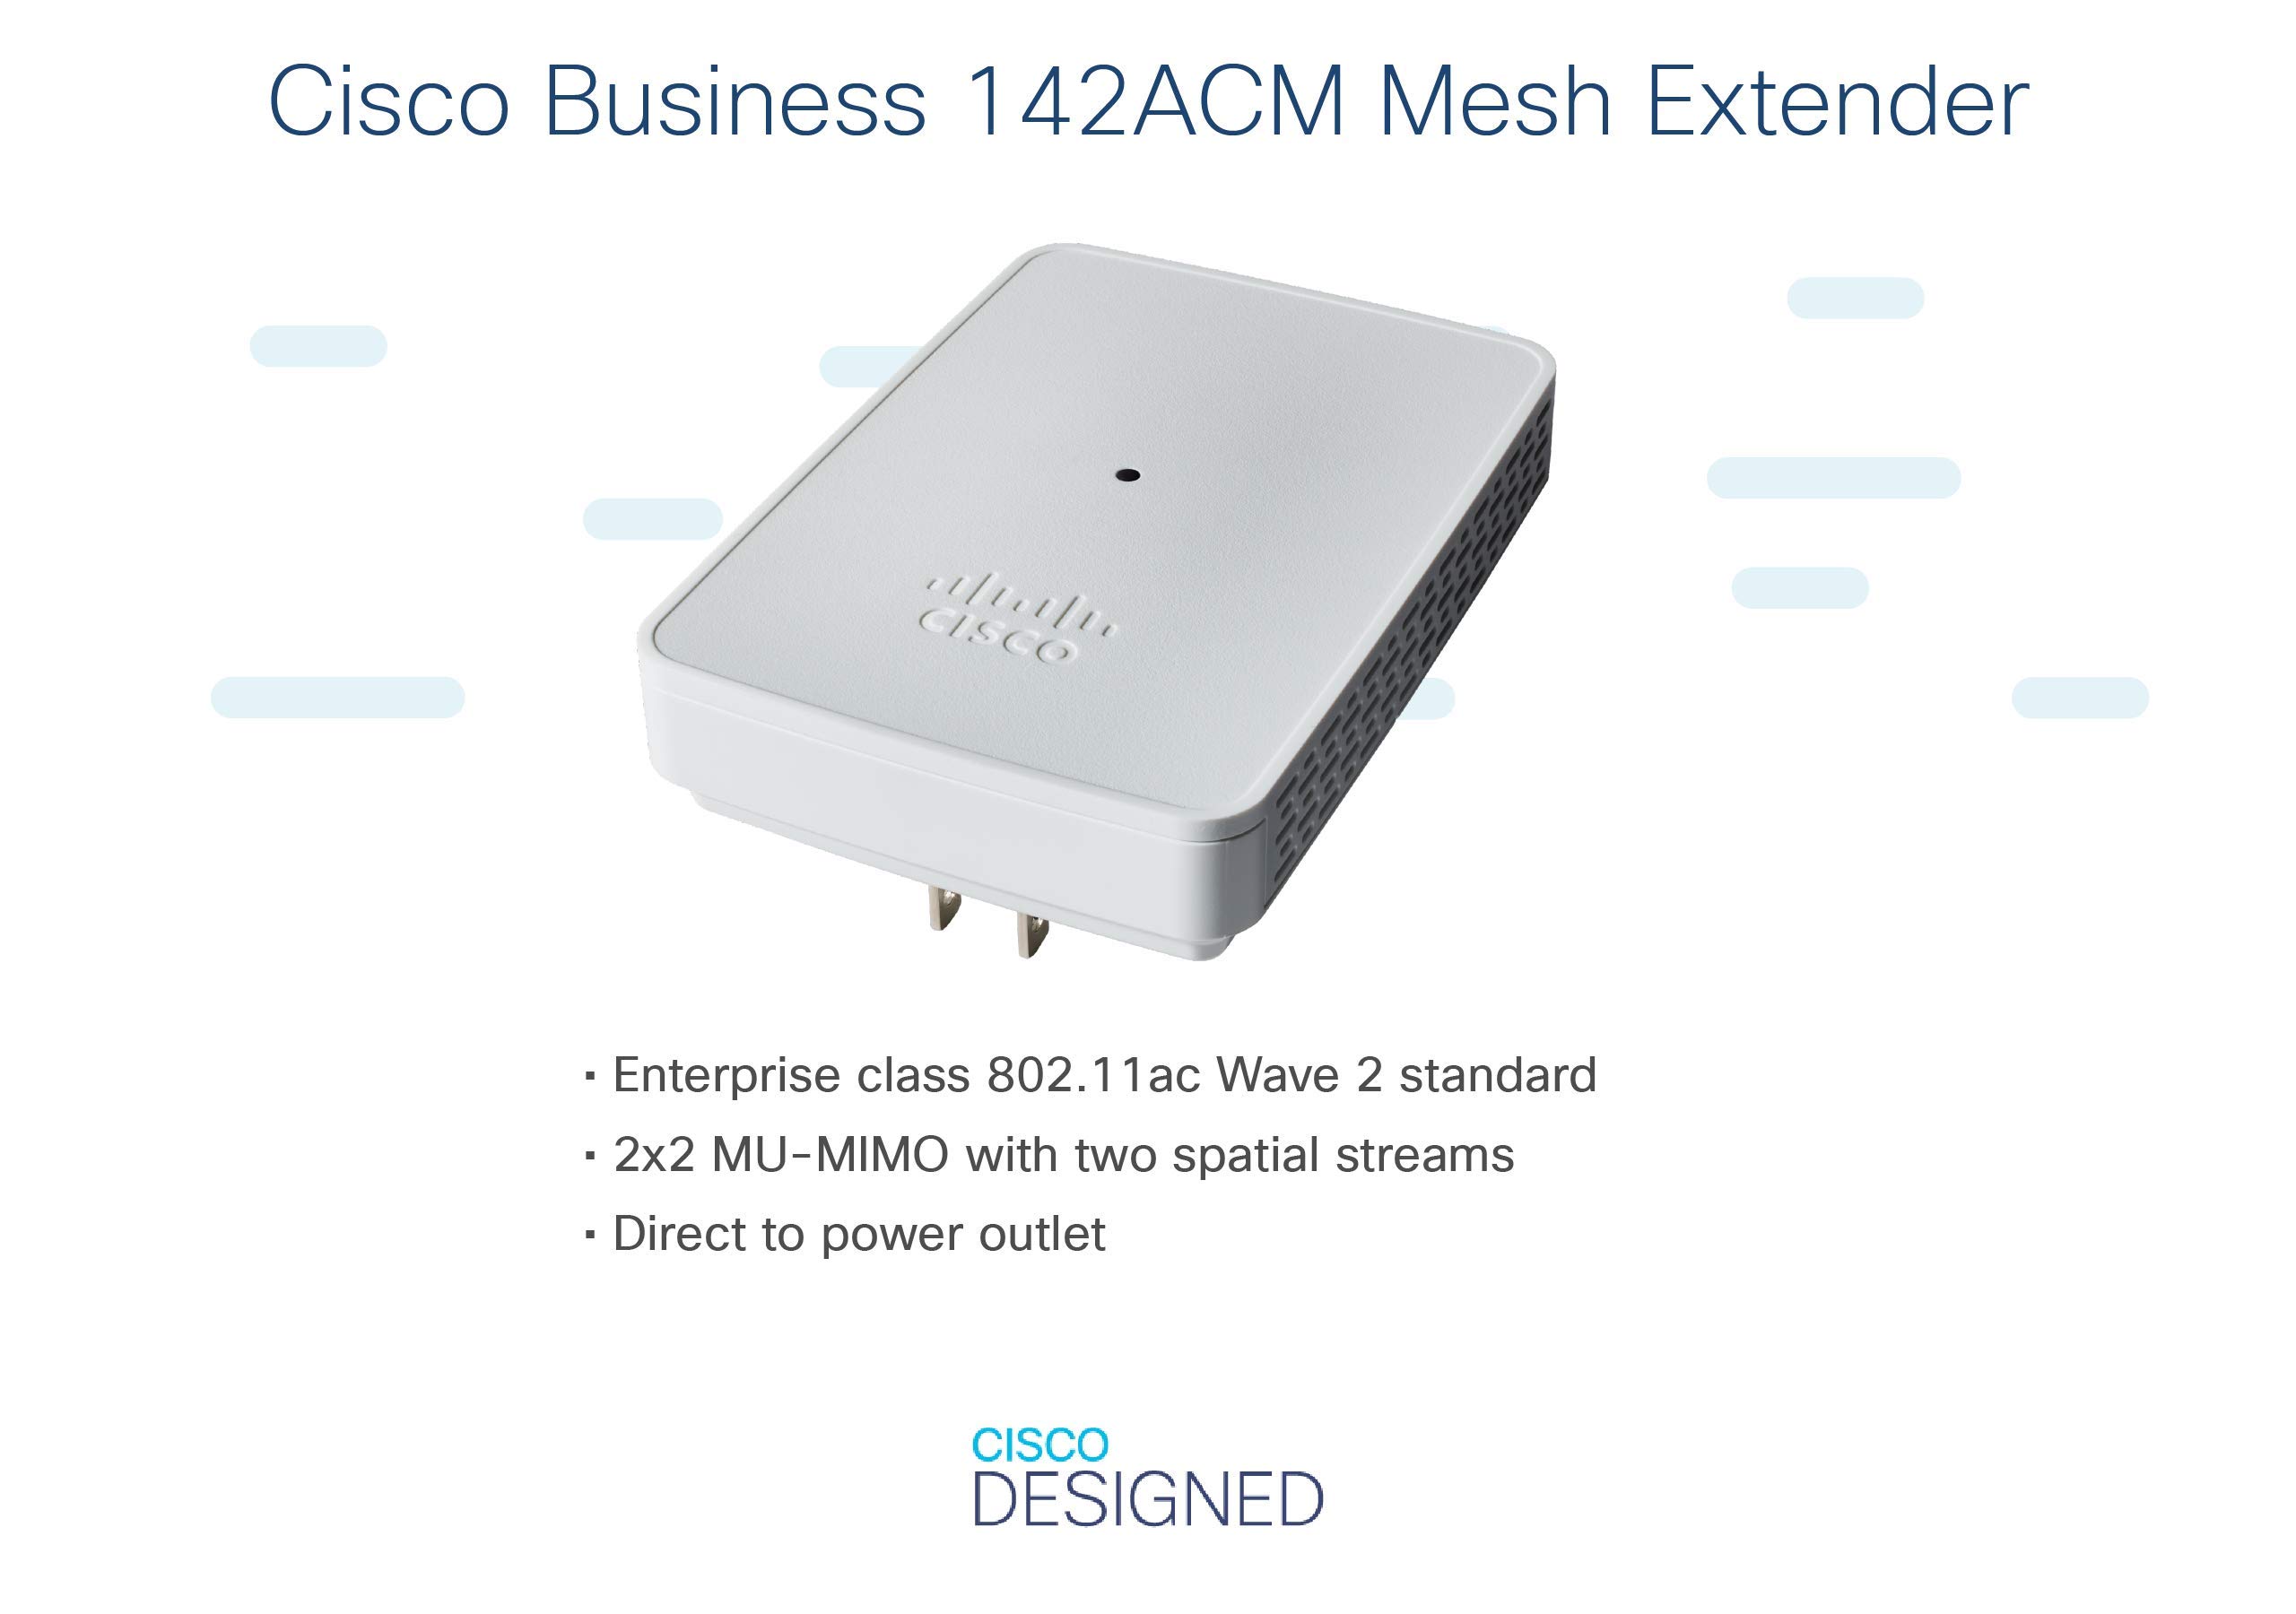 Access Point Cisco Business 142ACM 